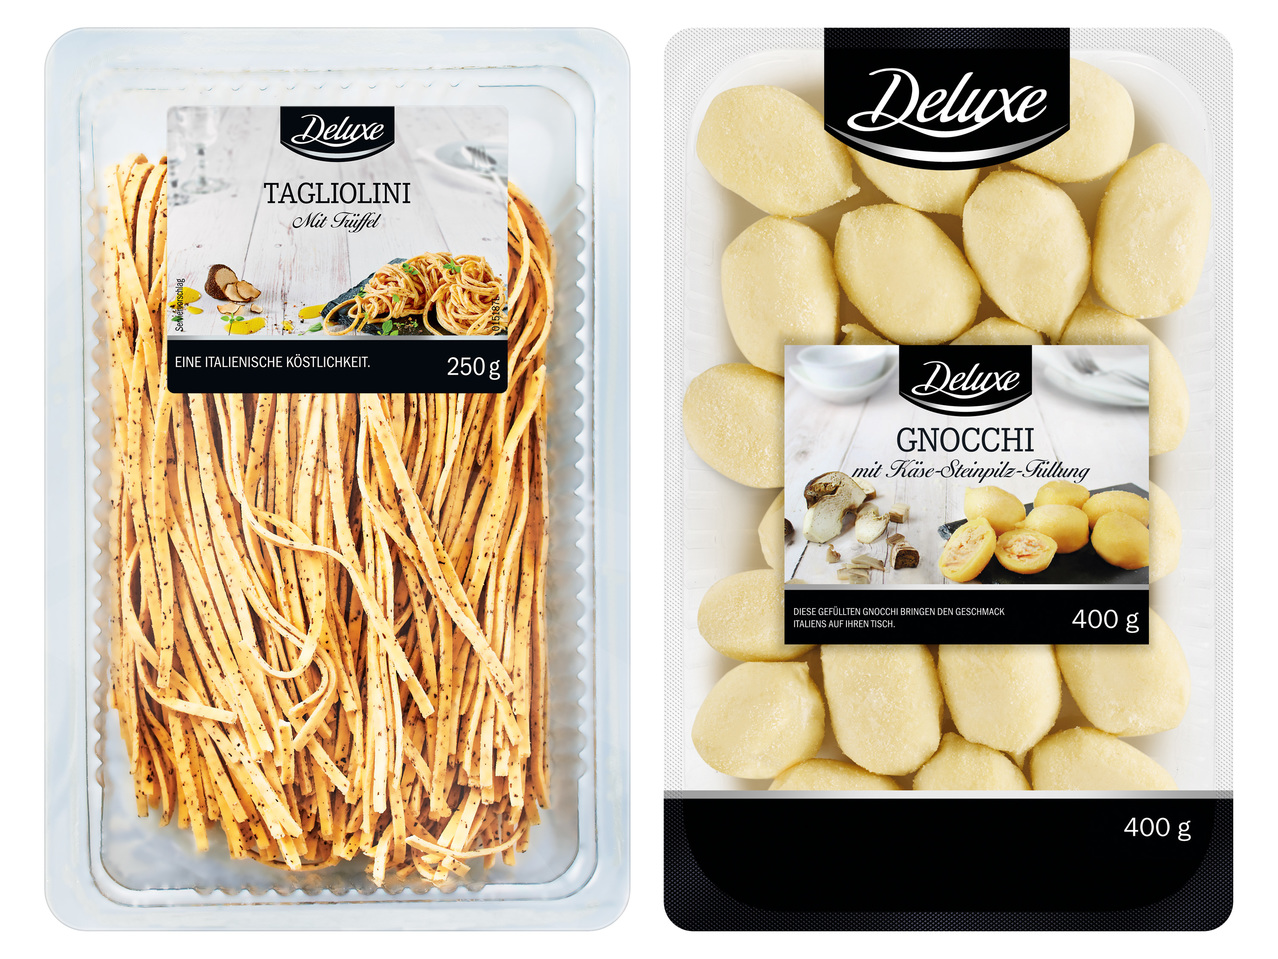 DELUXE Tagliolini mit Trüffel oder Gnocchi mit Käse-Steinpilz-Füllung